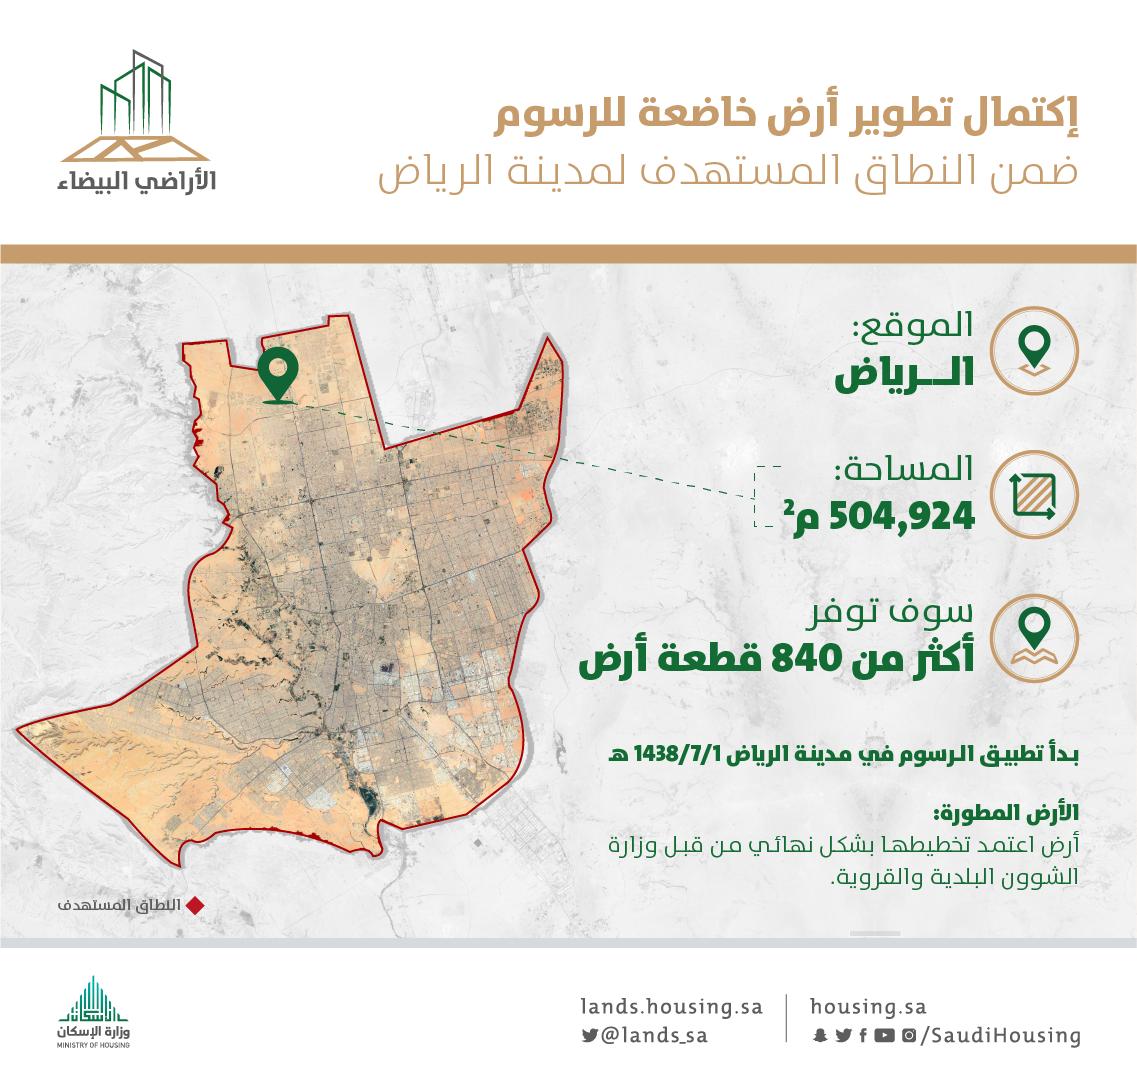 الانتهاء من تطوير أرض بيضاء خاضعة للرسوم في الرياض من قبل مالكها